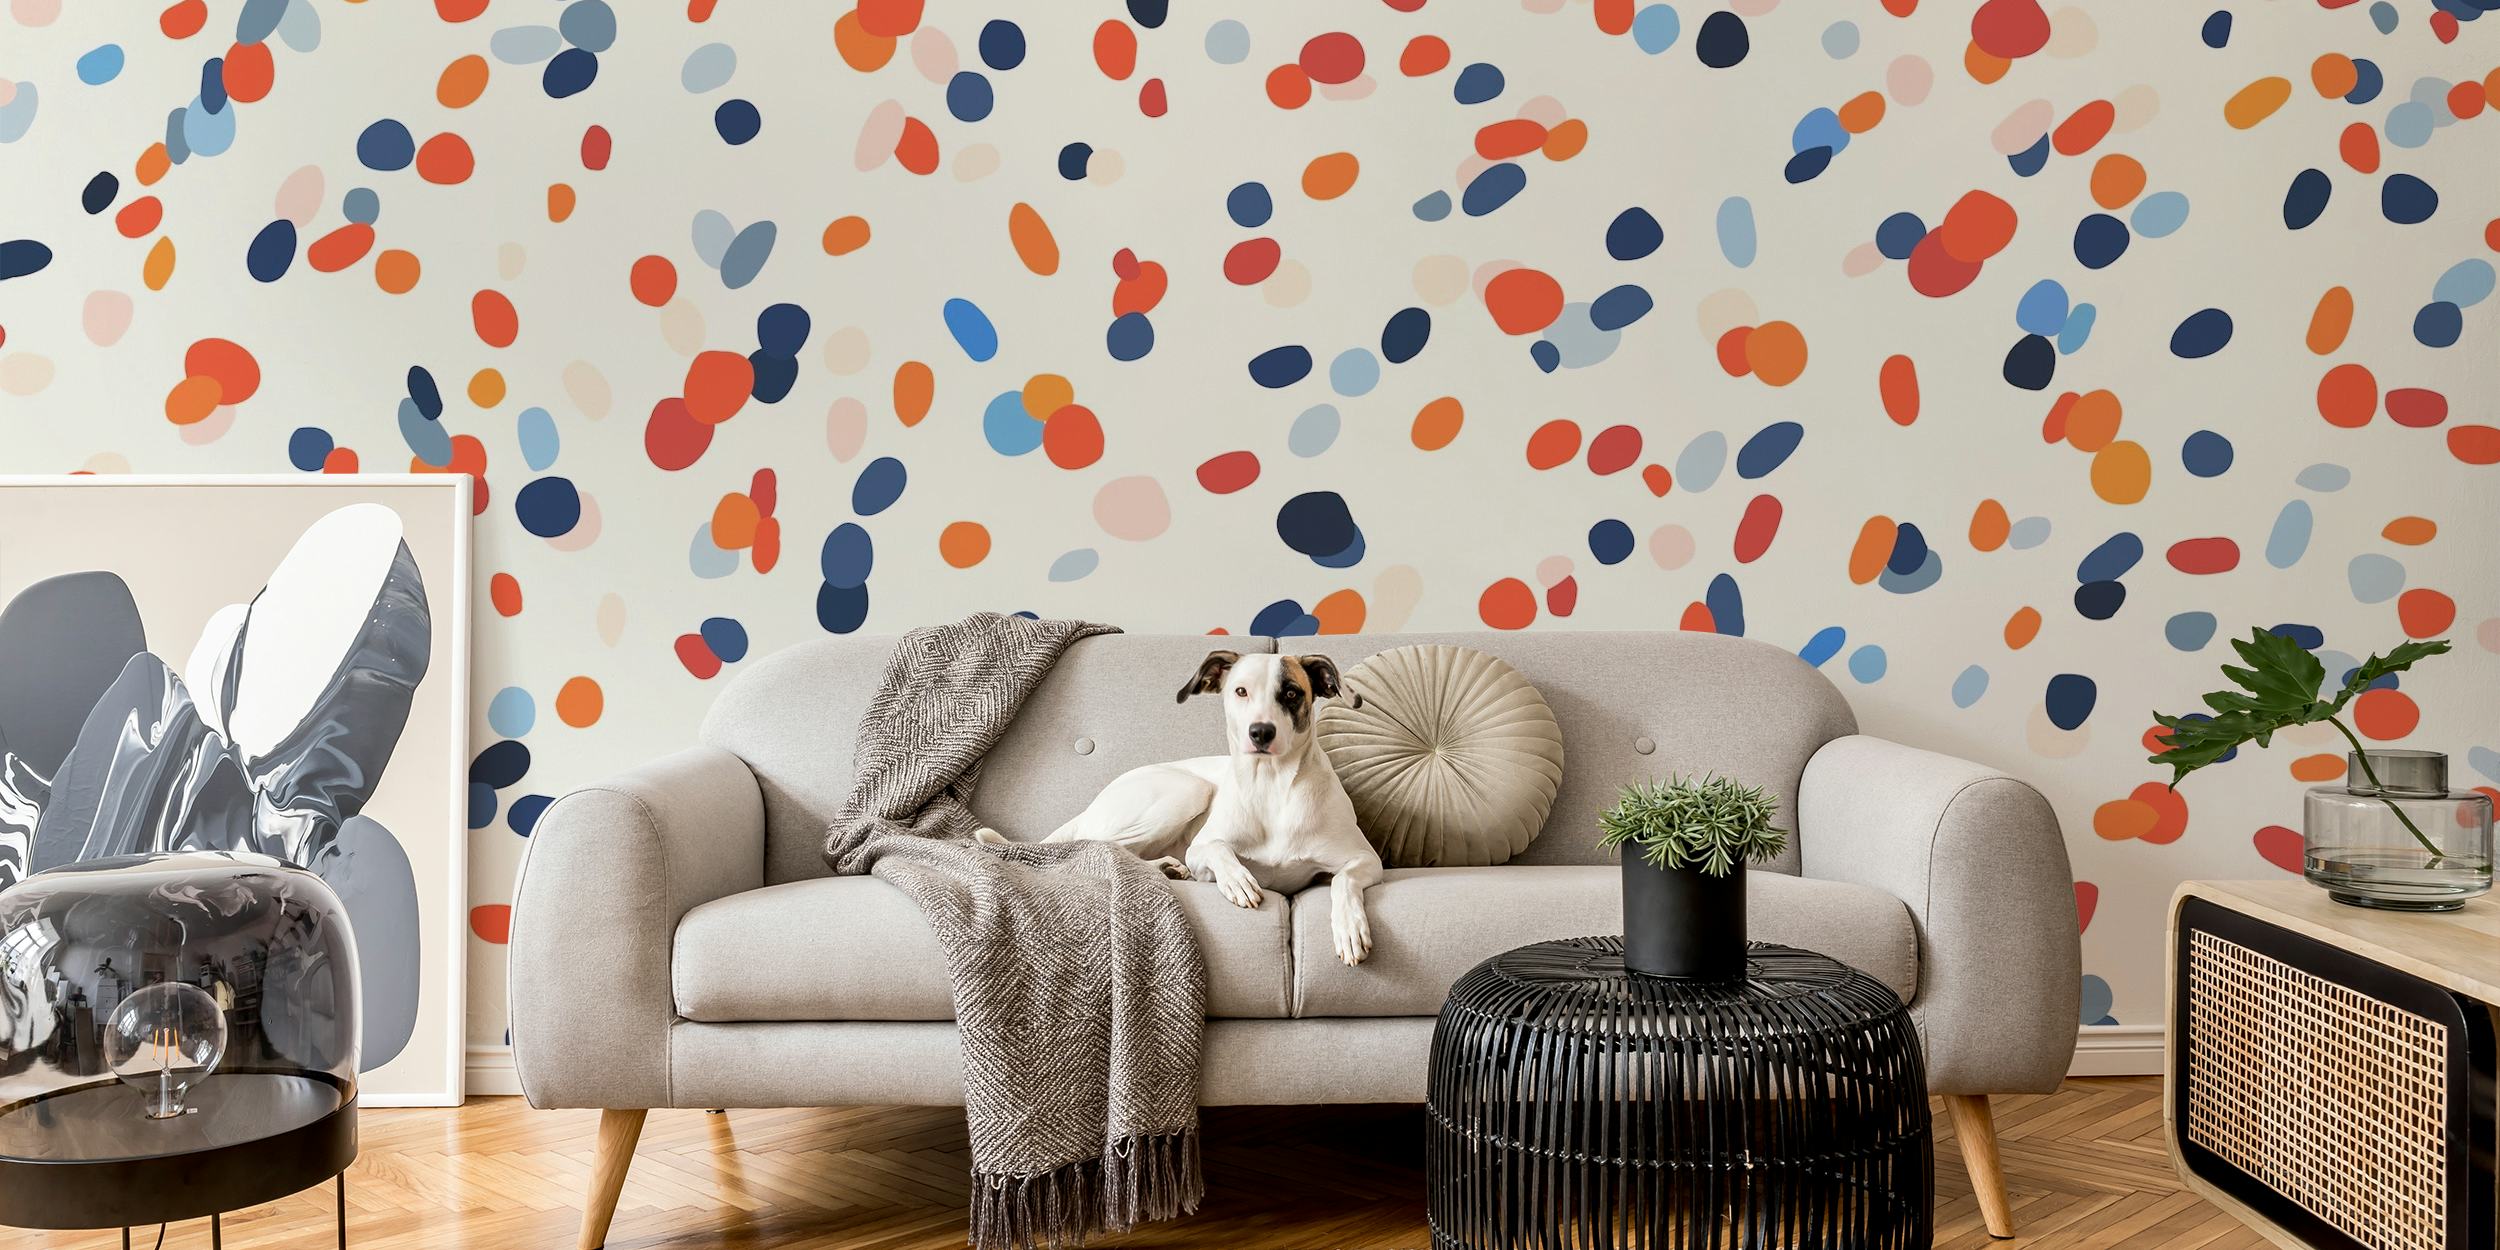 Colorful dots tapetit